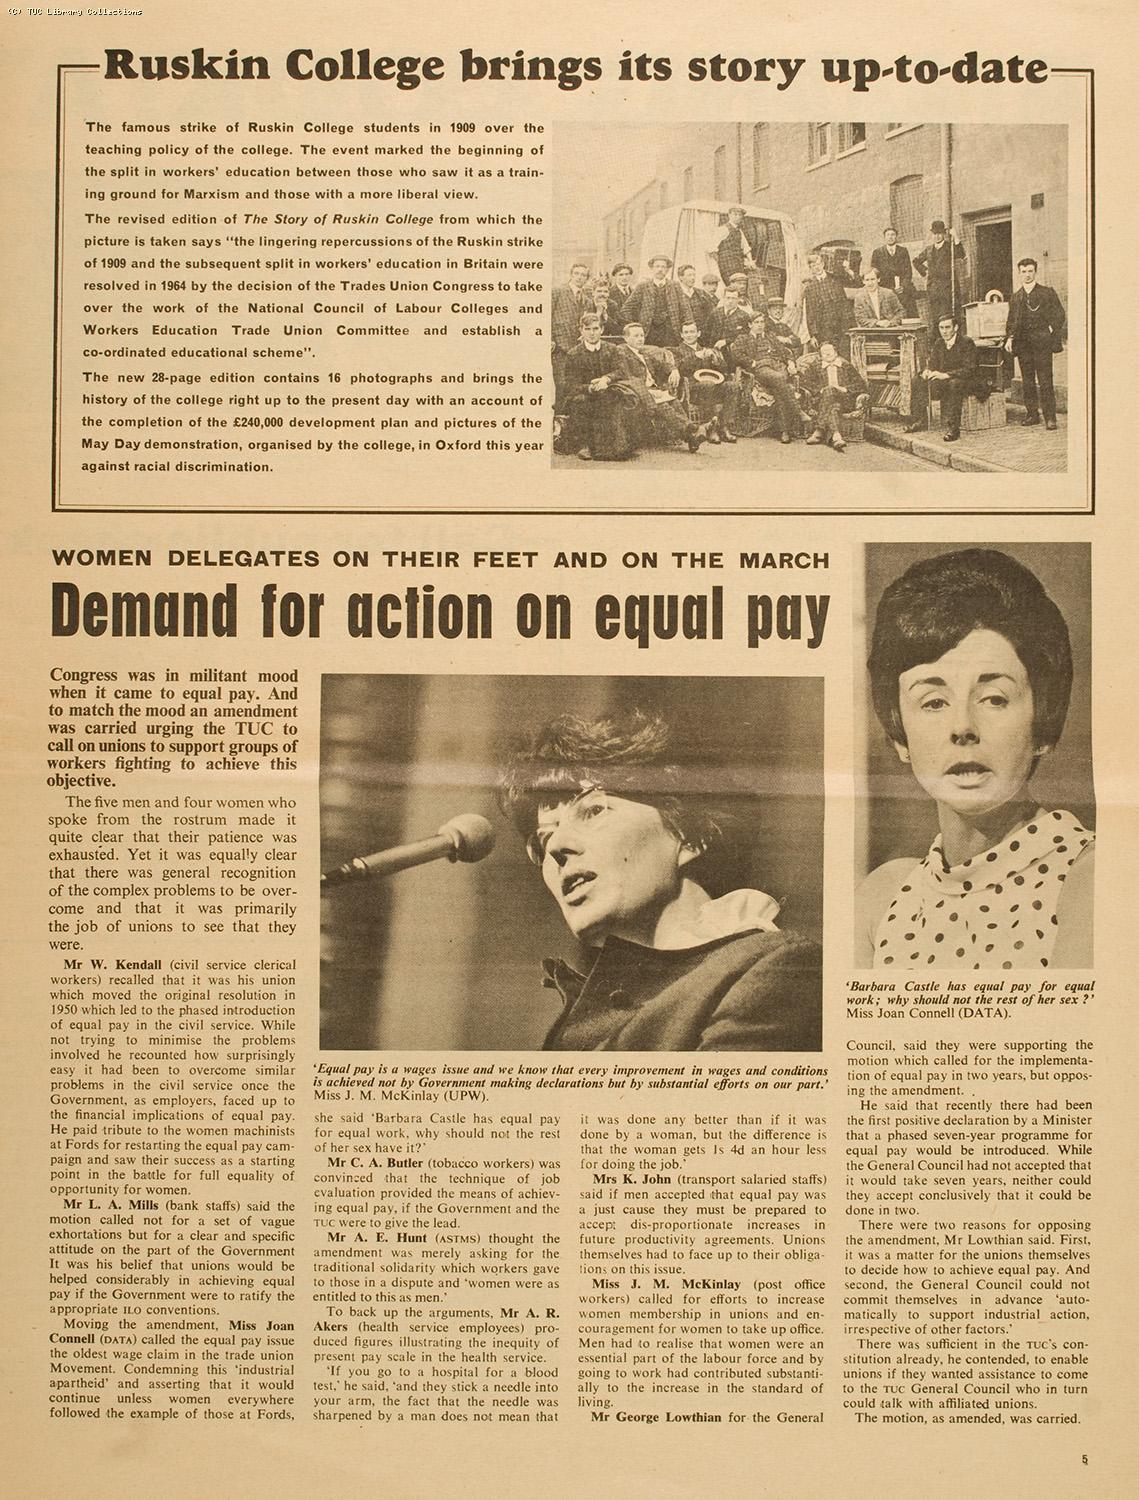 TUC Equal Pay debate, 1968